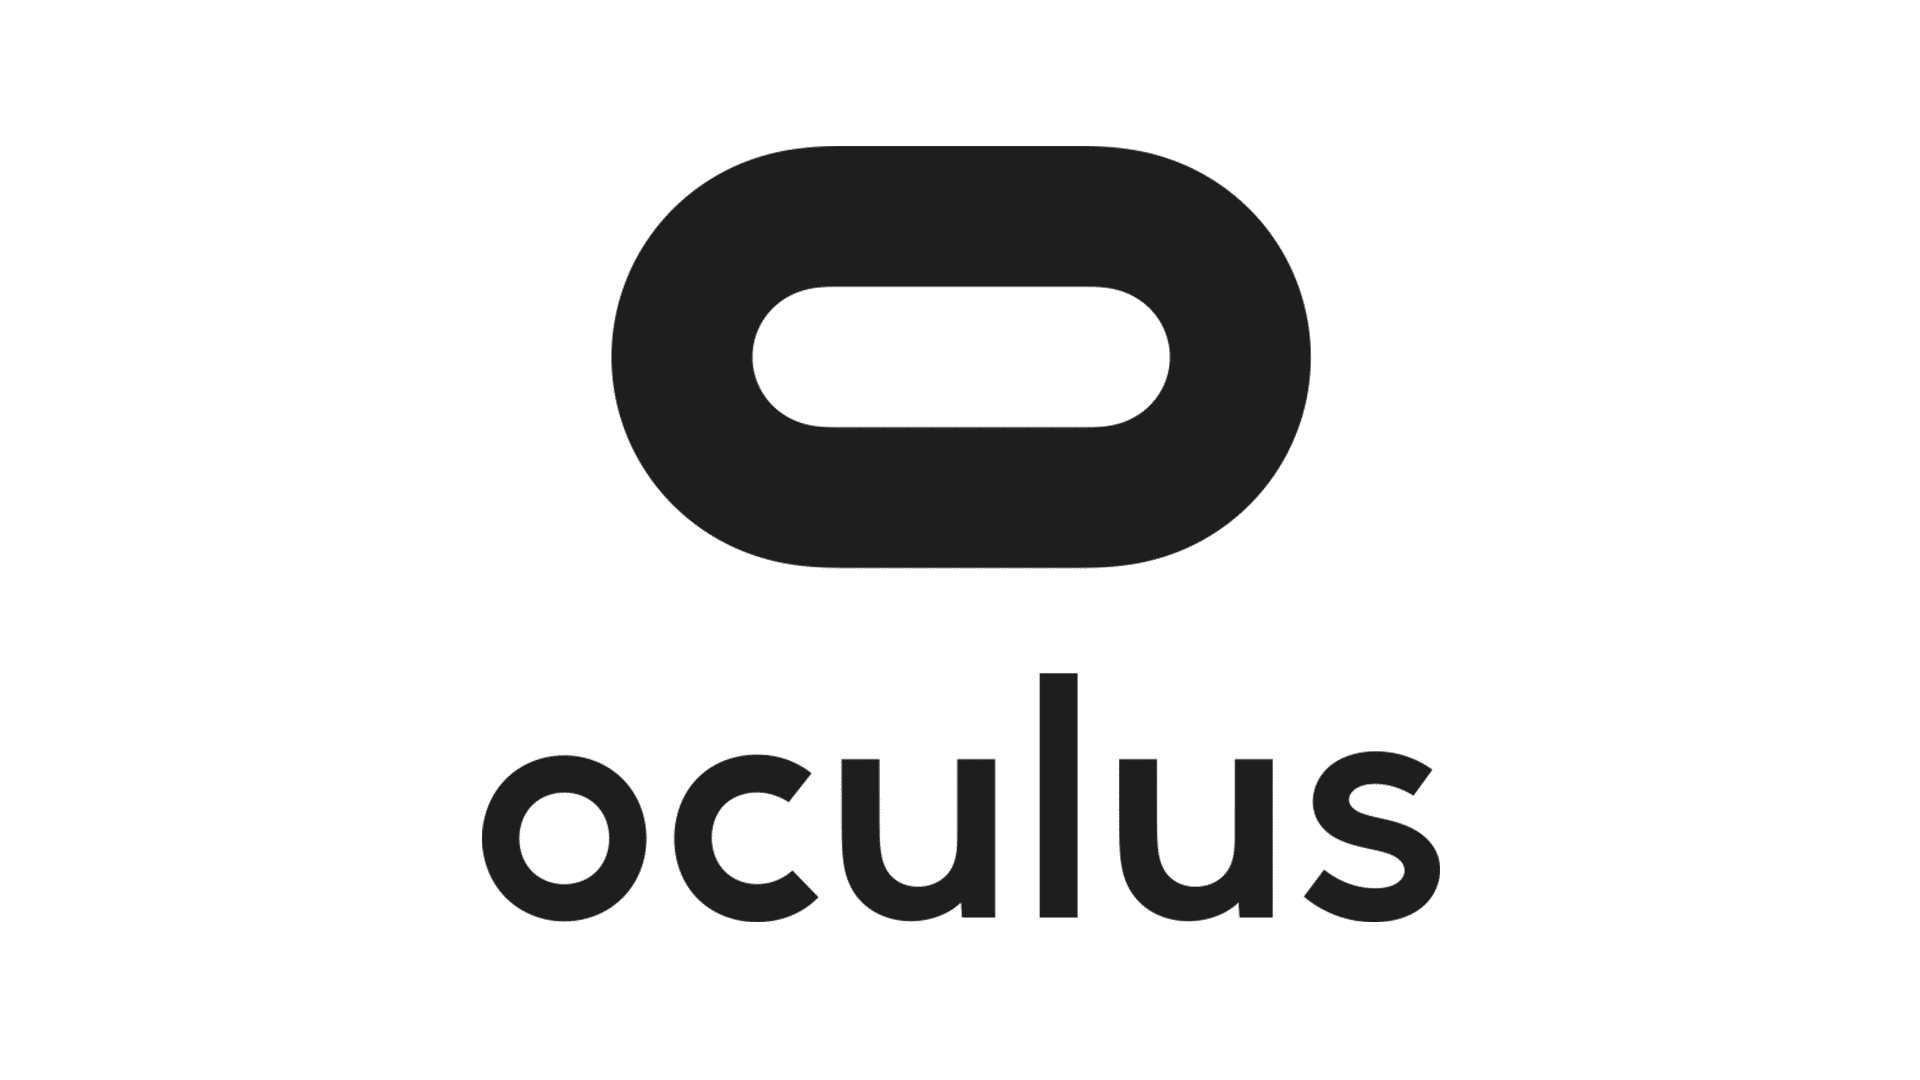 oculus-logo